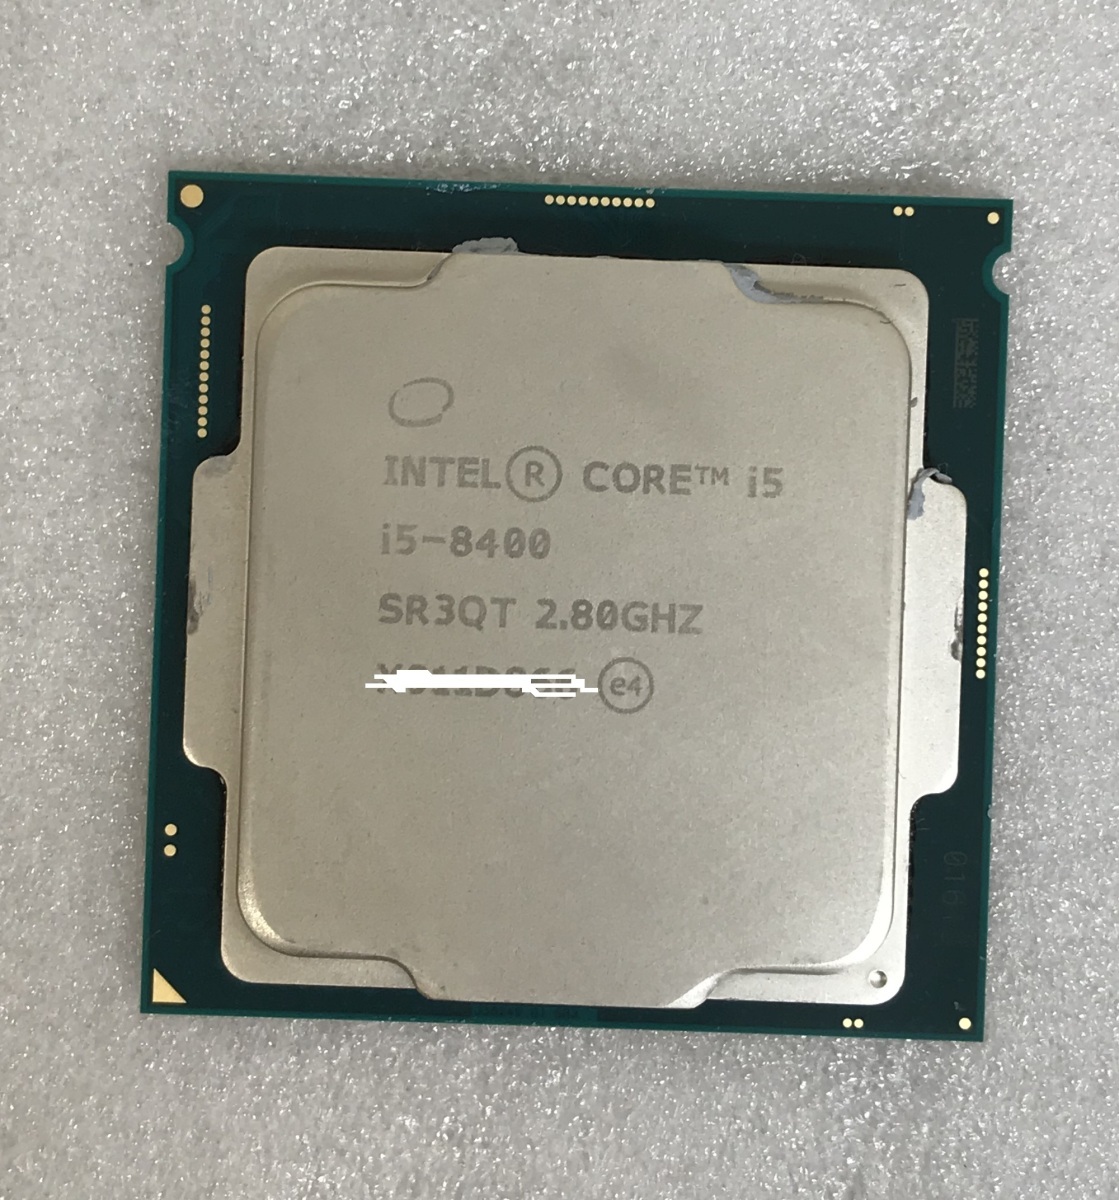 CPU インテル Core i5-8400 2.80GHz SR3QT LGA1151 i5 第8世代 プロセッサー Intel Core i5 8400 中古動作確認済み_画像1